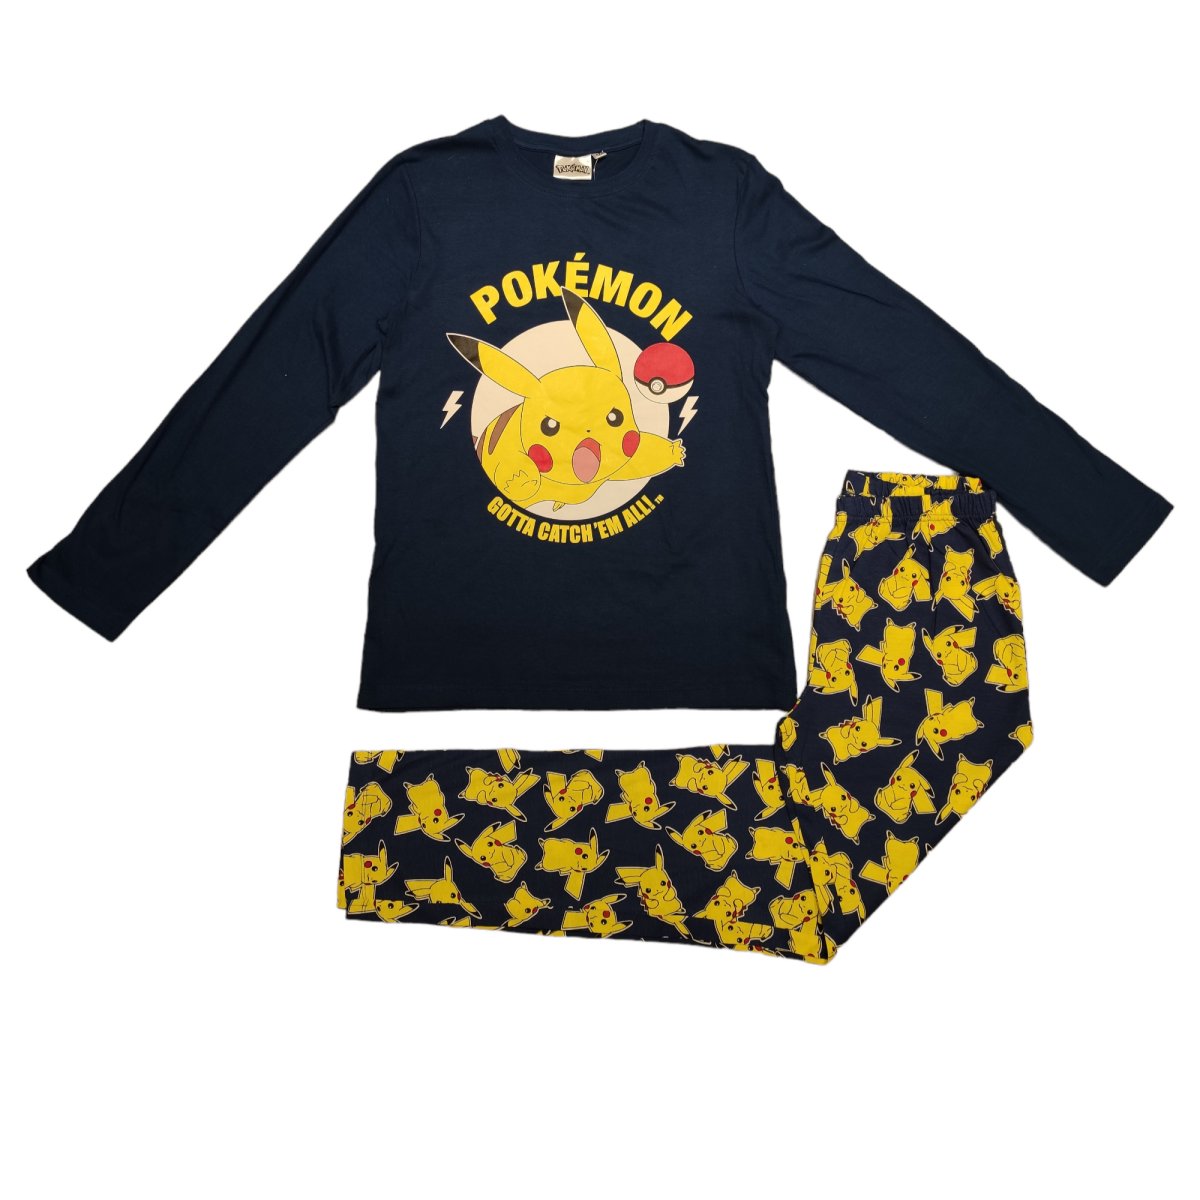 Pijama de Pokémon para niño. Tienda online moda |